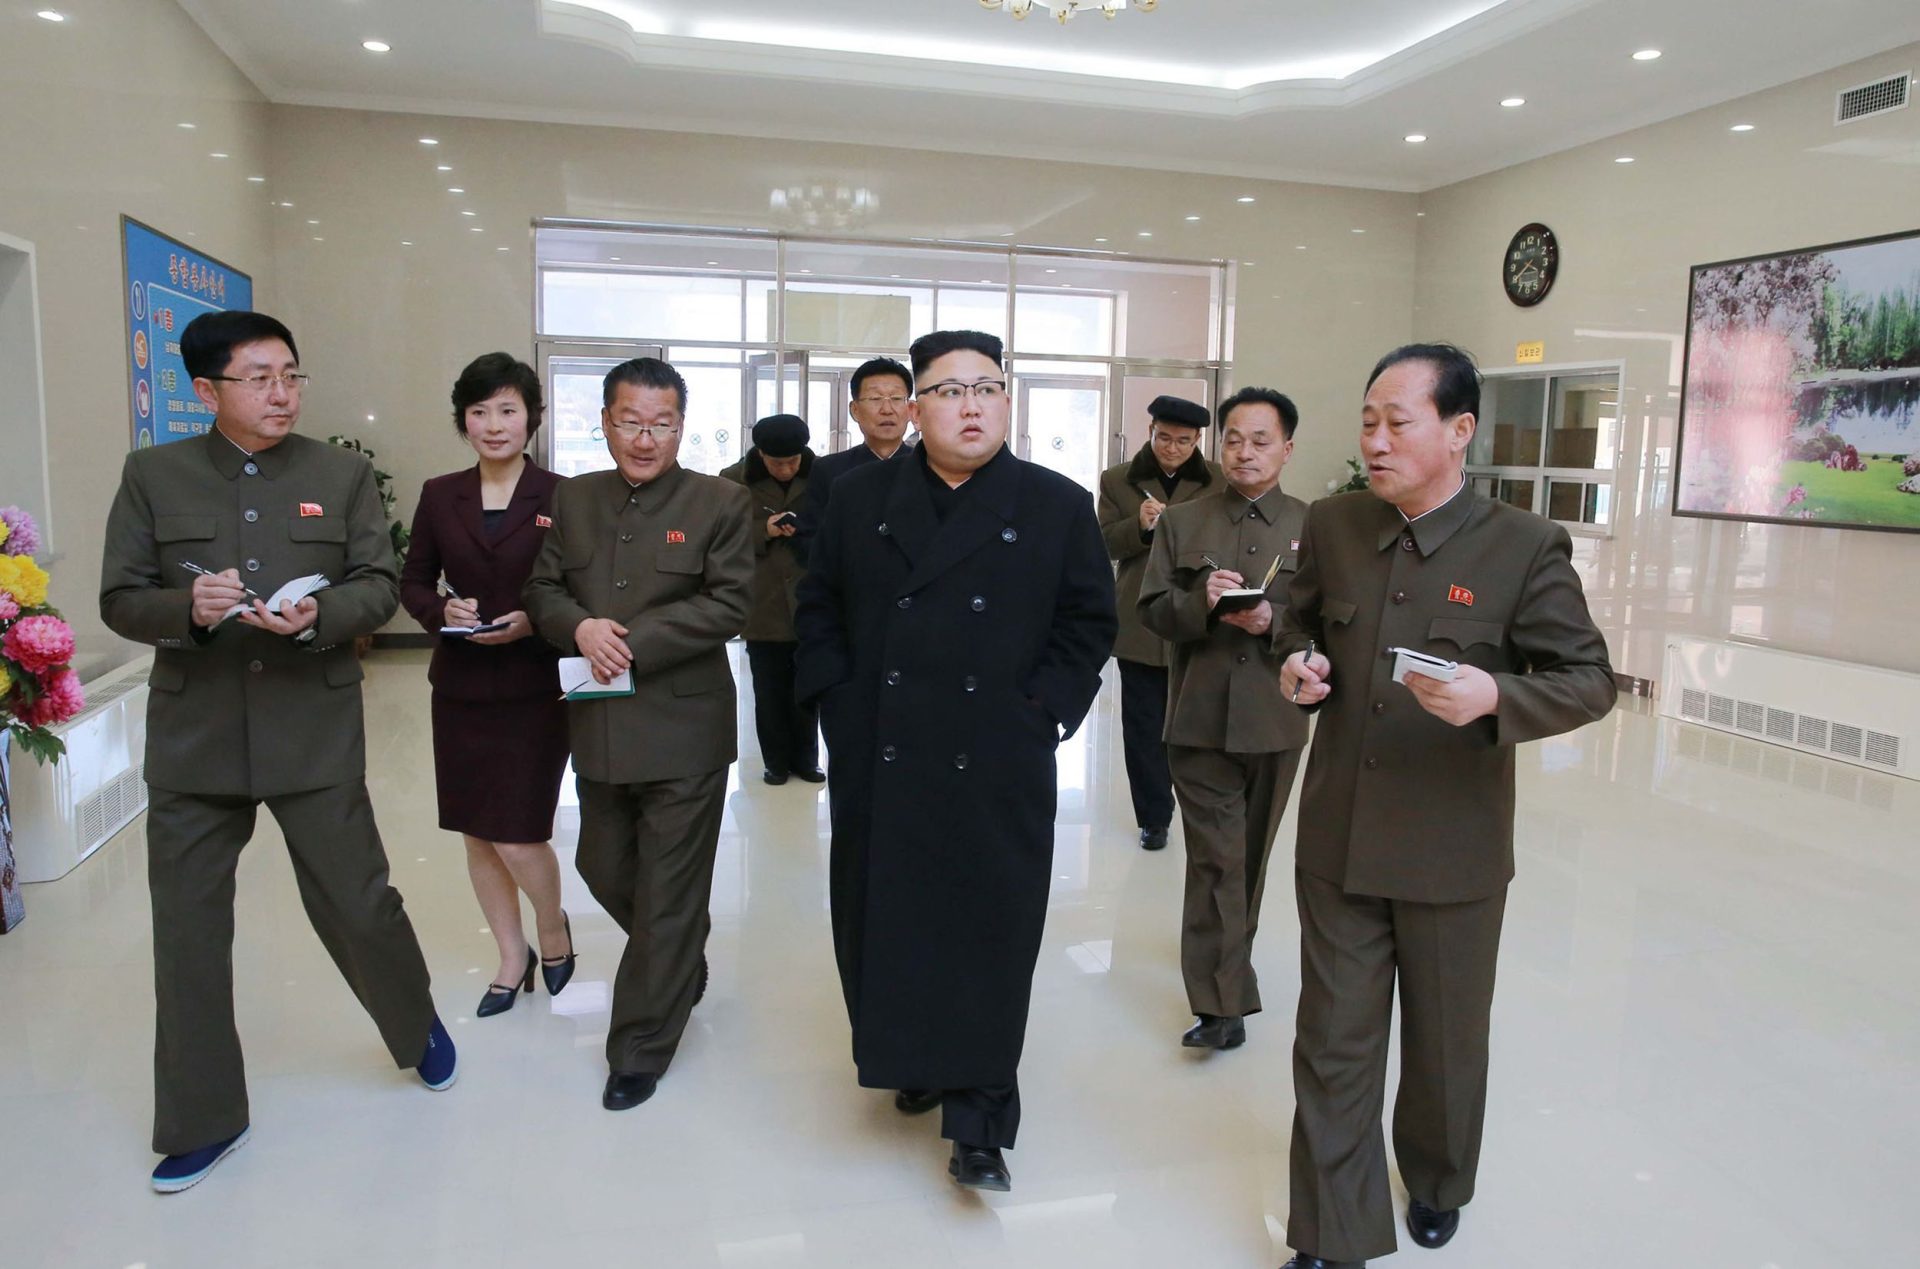 Coreia do Norte. A provocação caiu em ouvido mouco